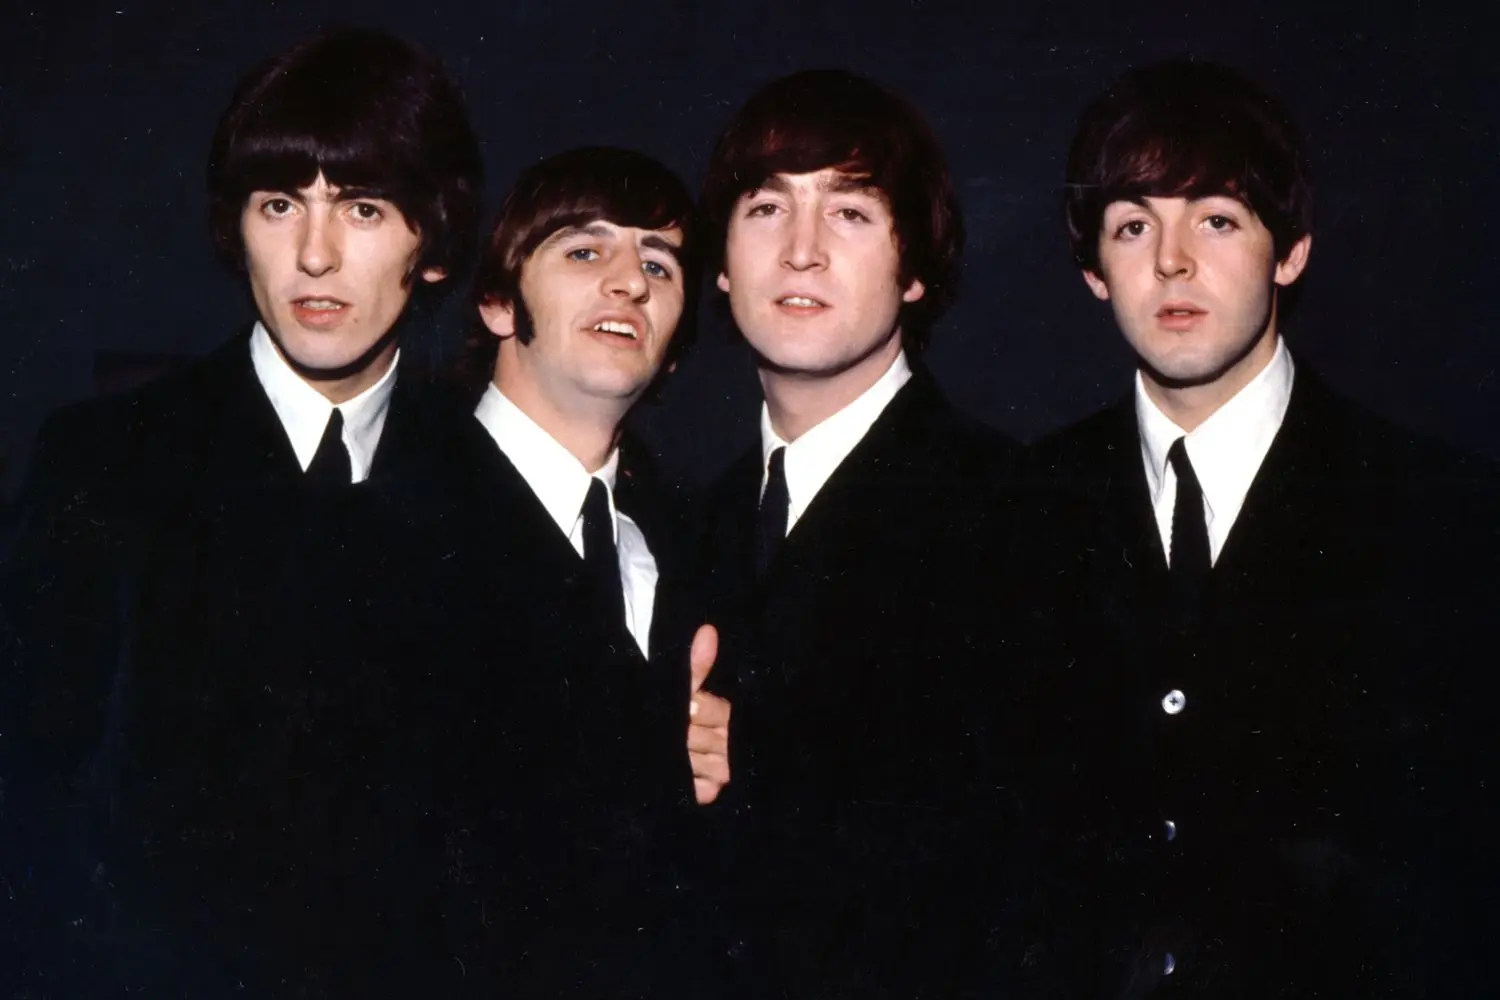 Beatles Forever!